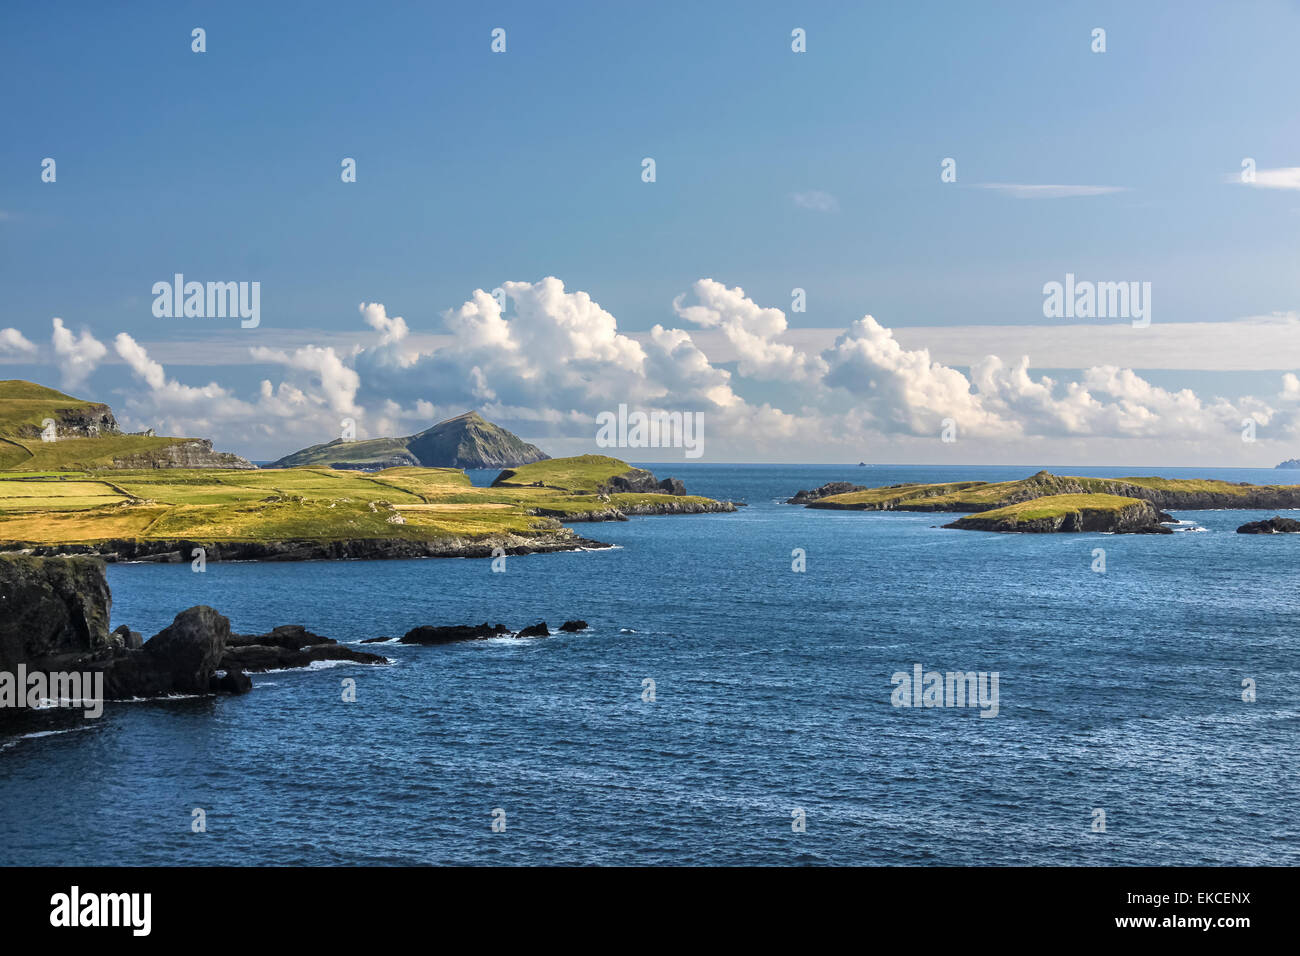 Coastal landscape at Valentia Island, County Kerry, Ireland Stock Photo